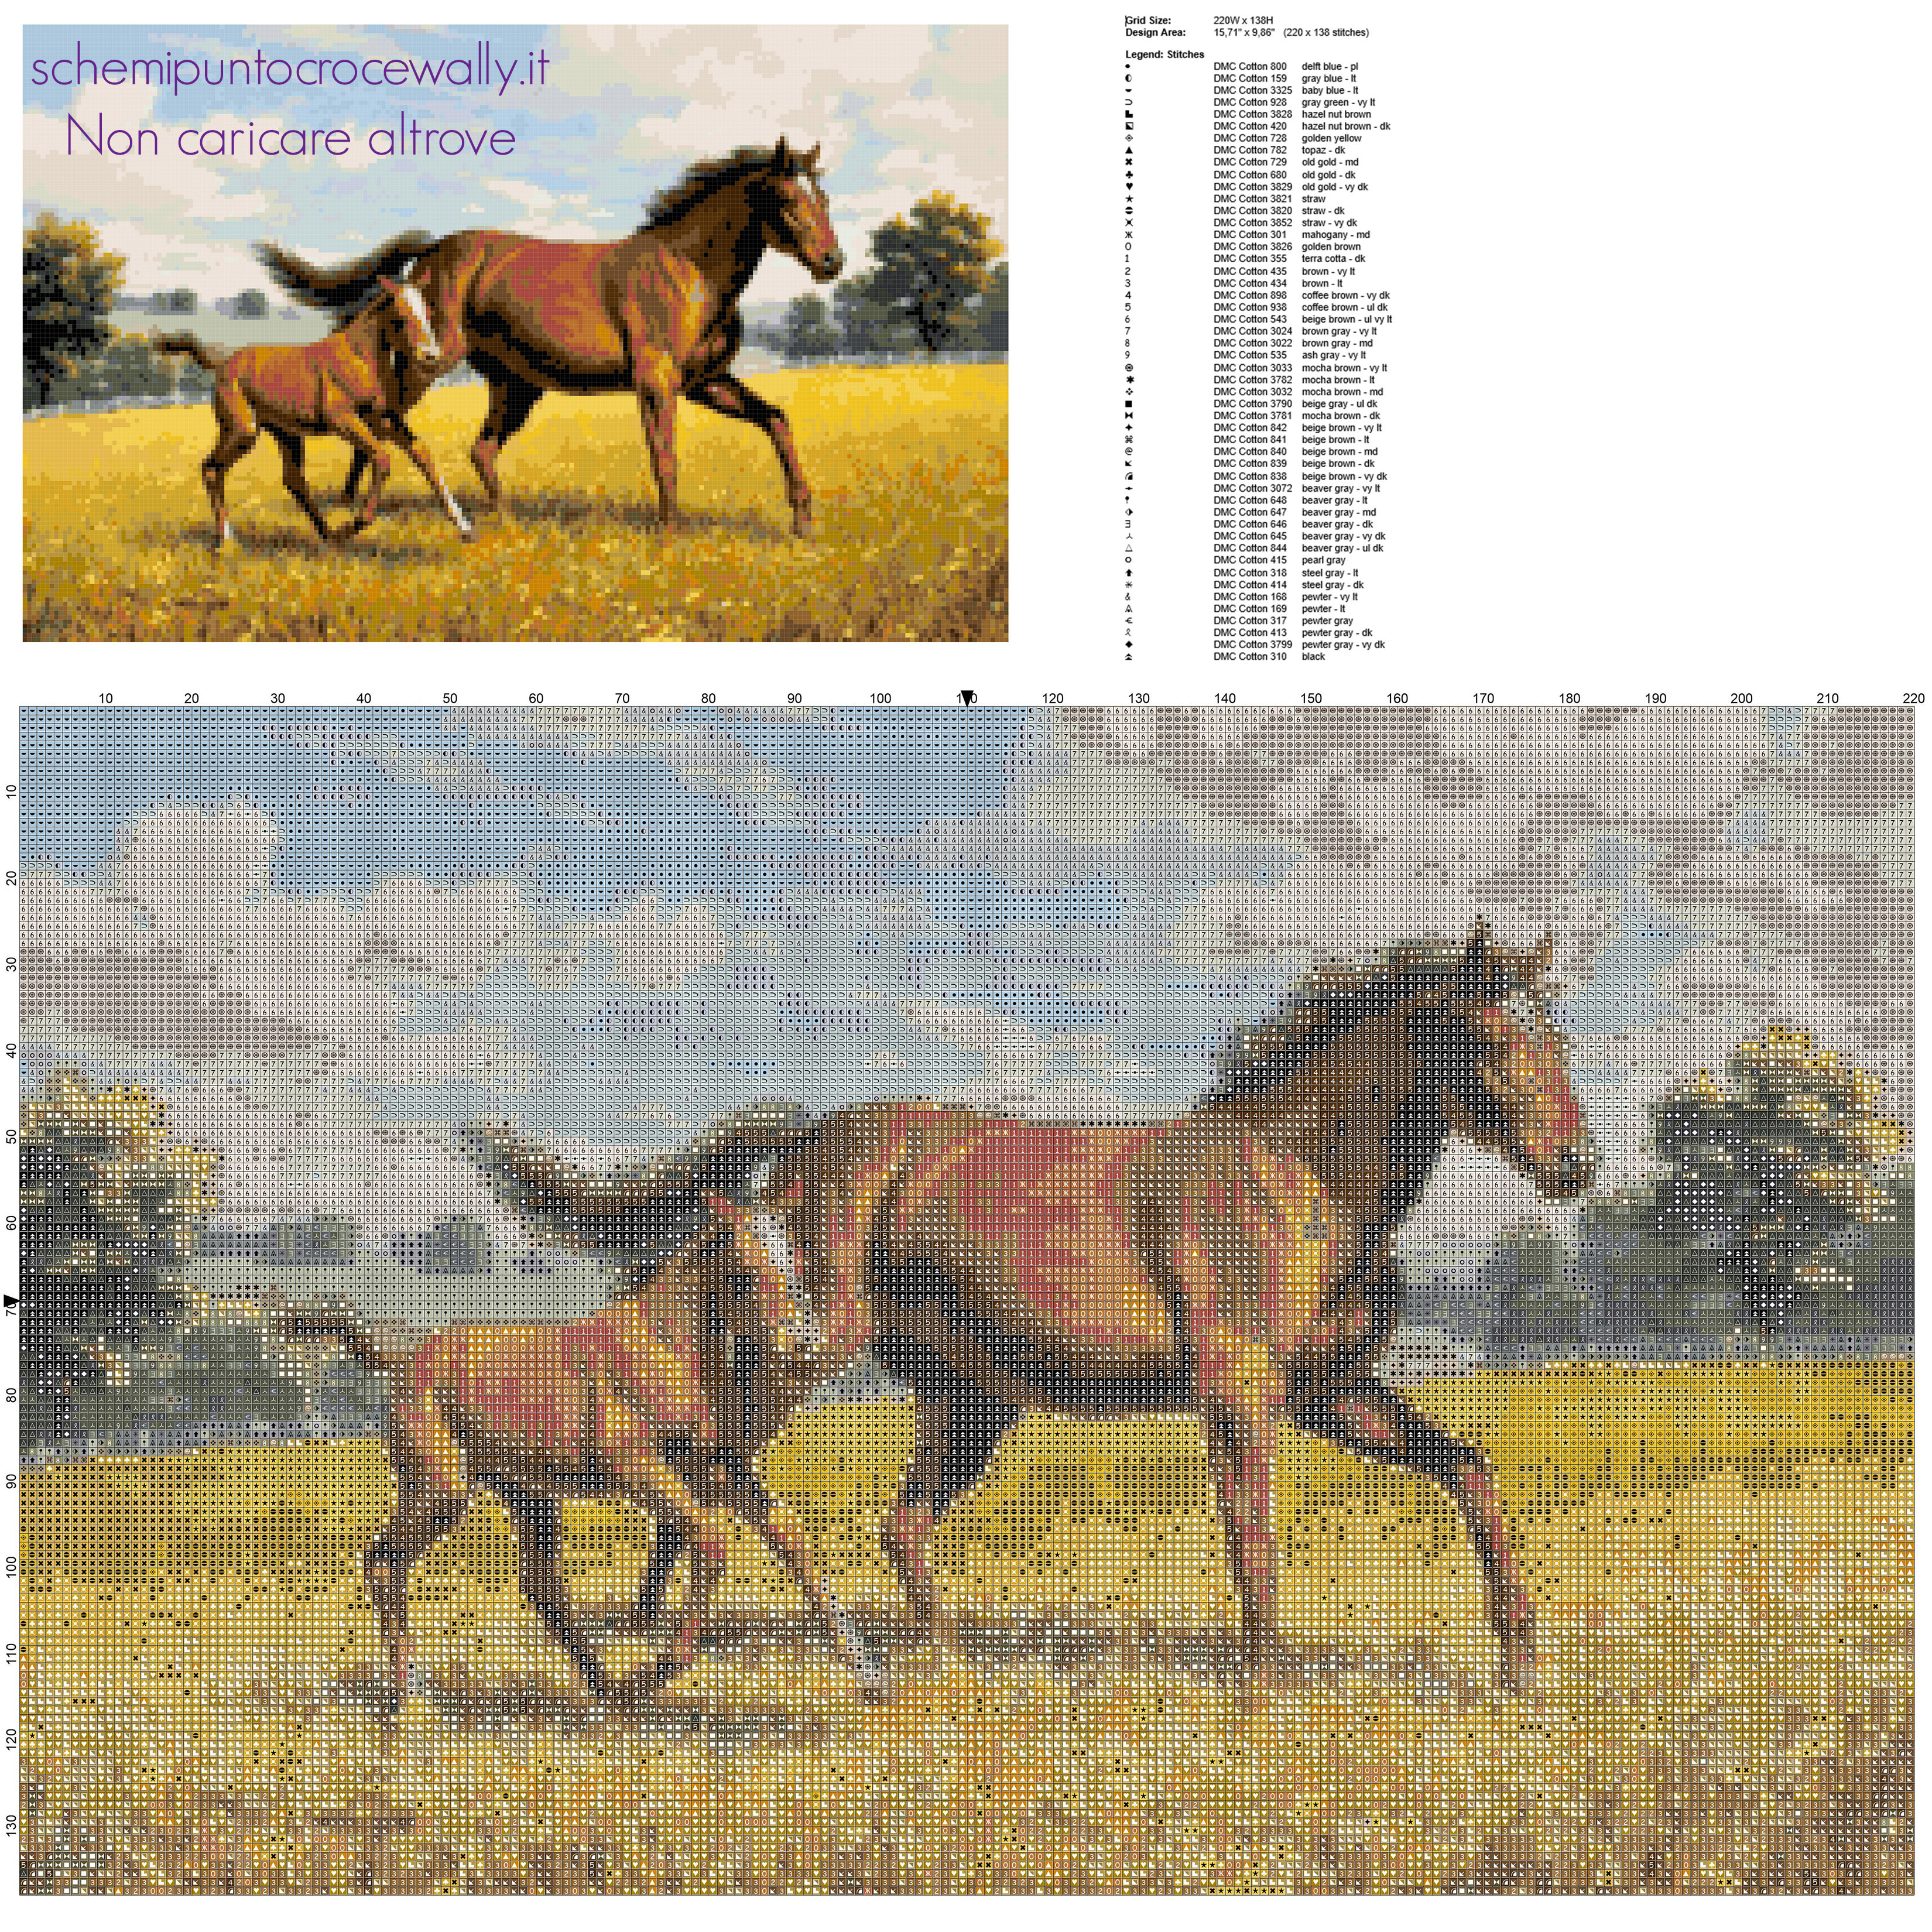 Un bellissimo quadro con dei cavalli liberi schema punto croce gratis